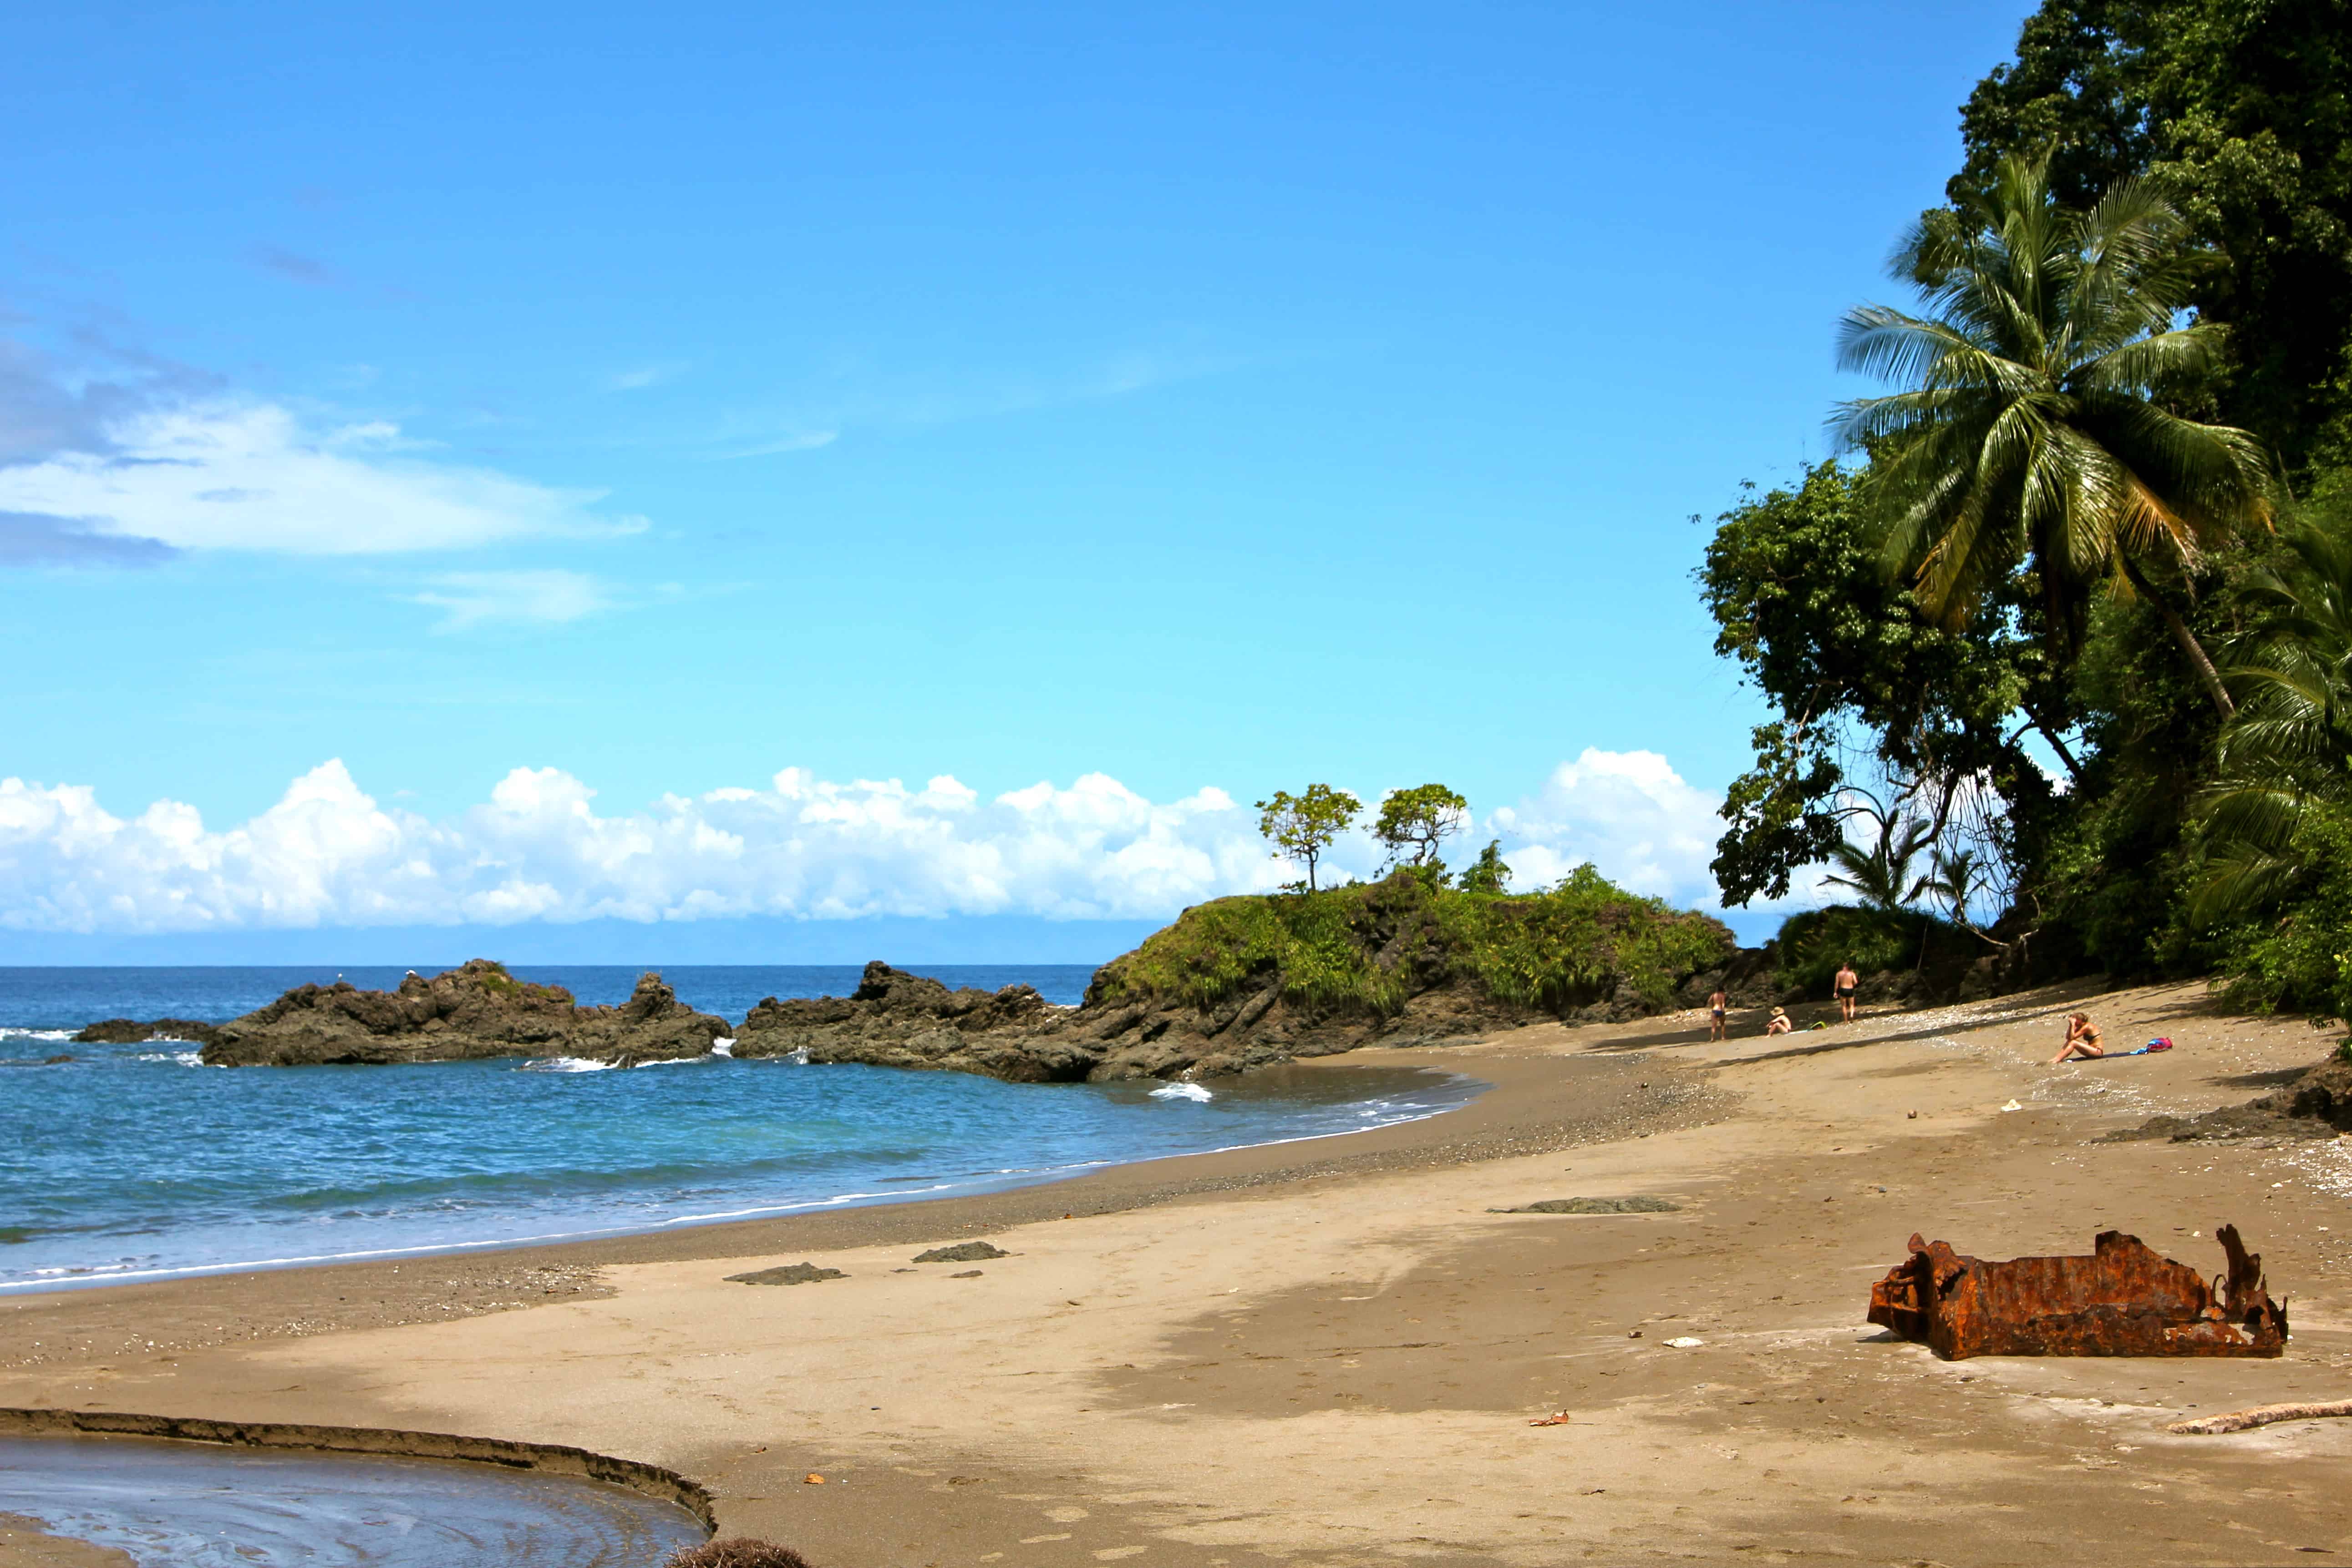 Beach in Caño Island, Costa Rica